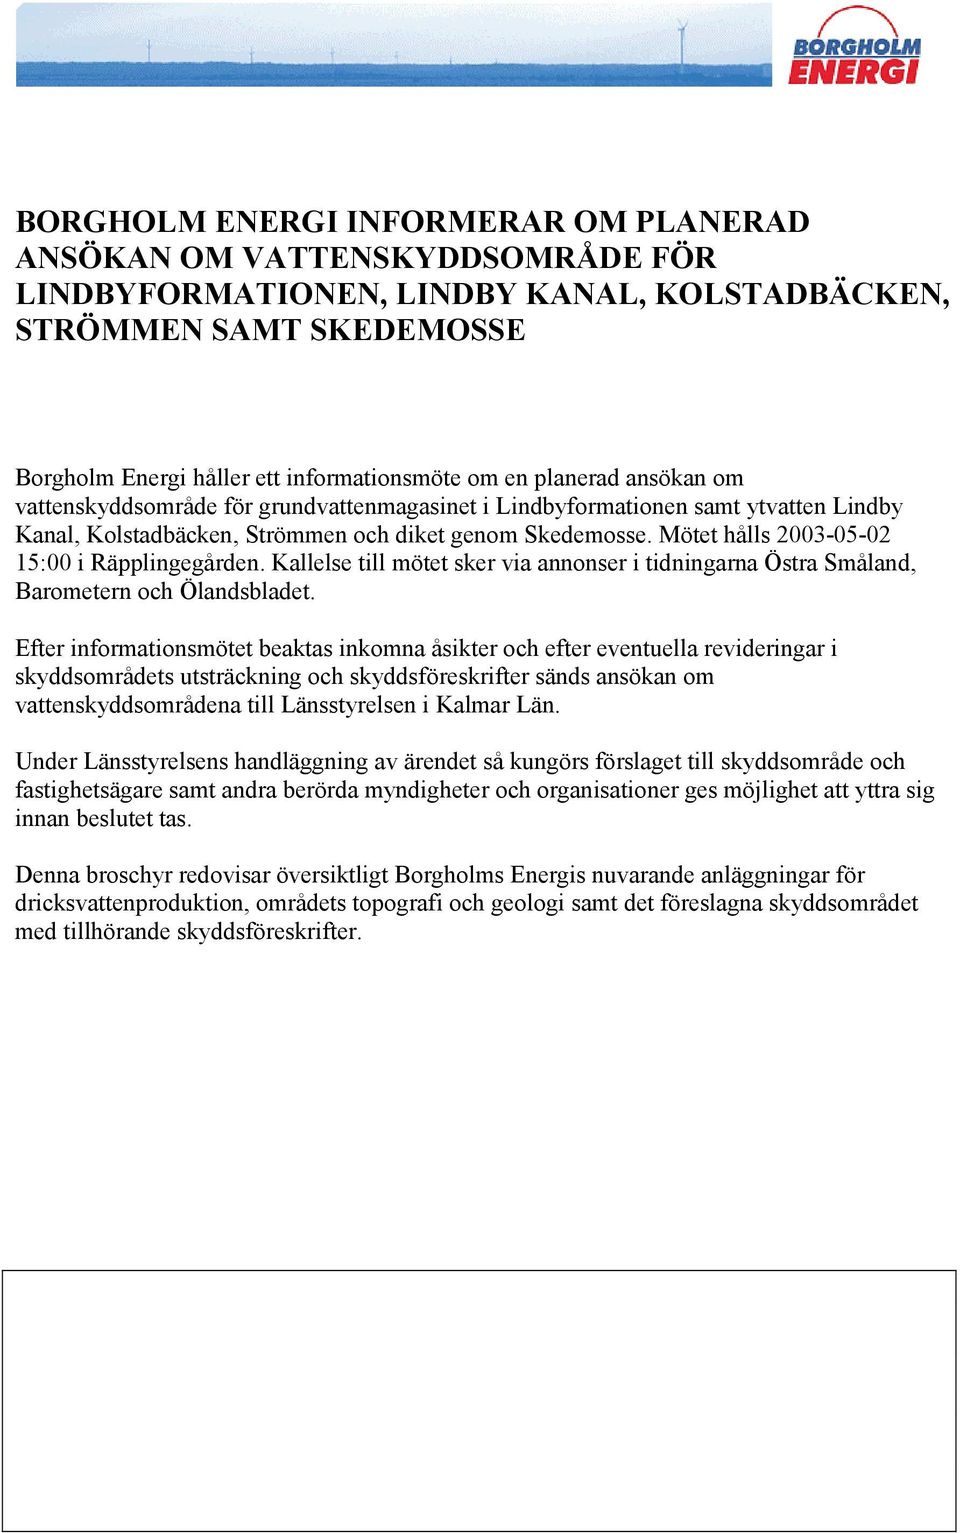 Mötet hålls 2003-05-02 15:00 i Räpplingegården. Kallelse till mötet sker via annonser i tidningarna Östra Småland, Barometern och Ölandsbladet.